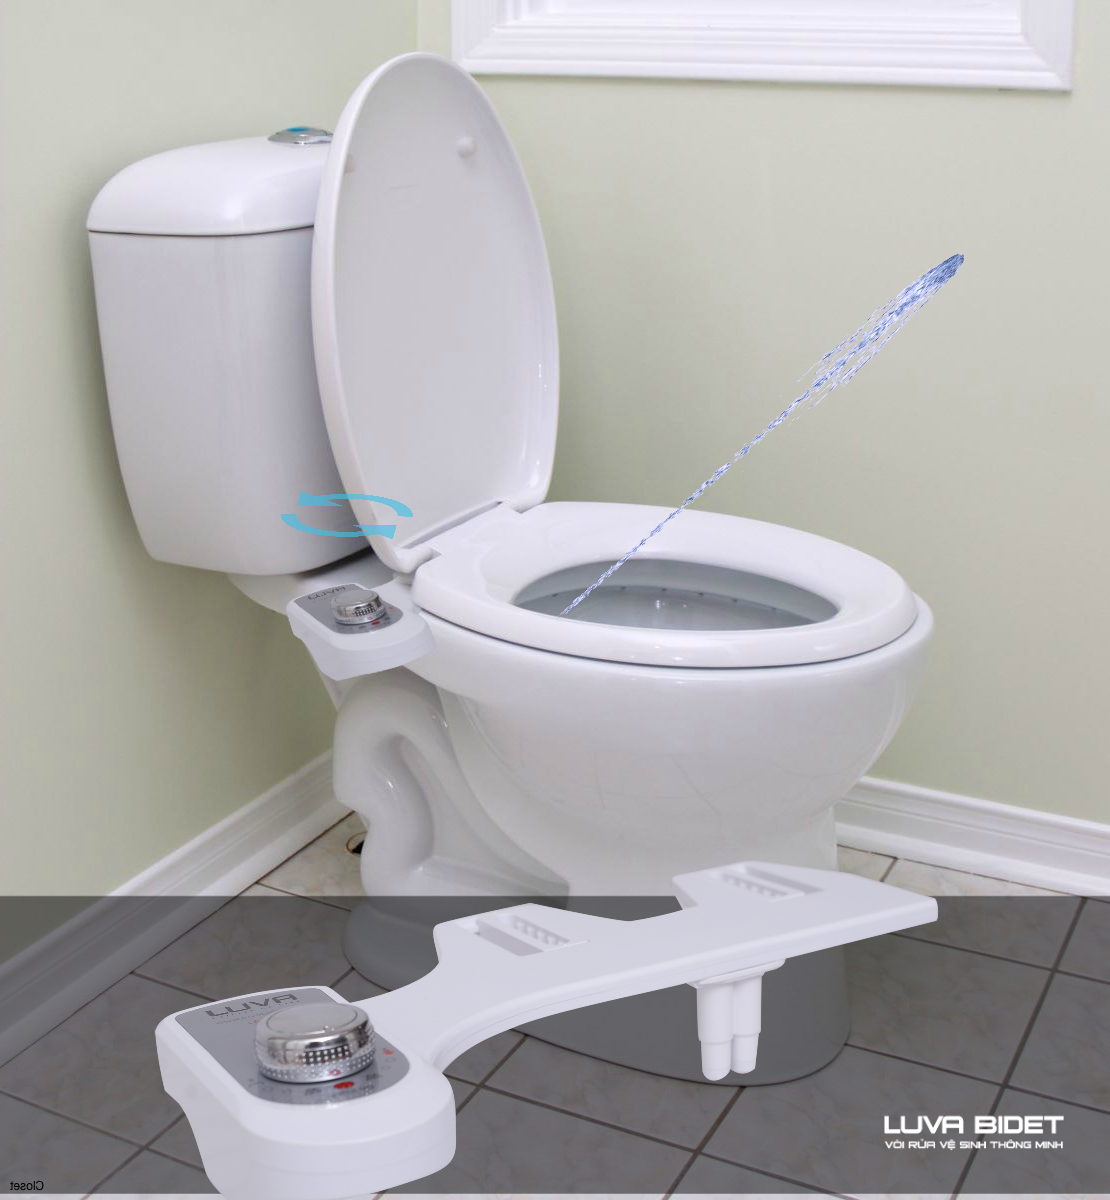 LUVA Bidet LB101 với một vòi rửa duy nhất sẽ giúp bạn vệ sinh sạch sẽ phần nhạy cảm mà không cần sử dụng giấy vệ sinh truyền thống